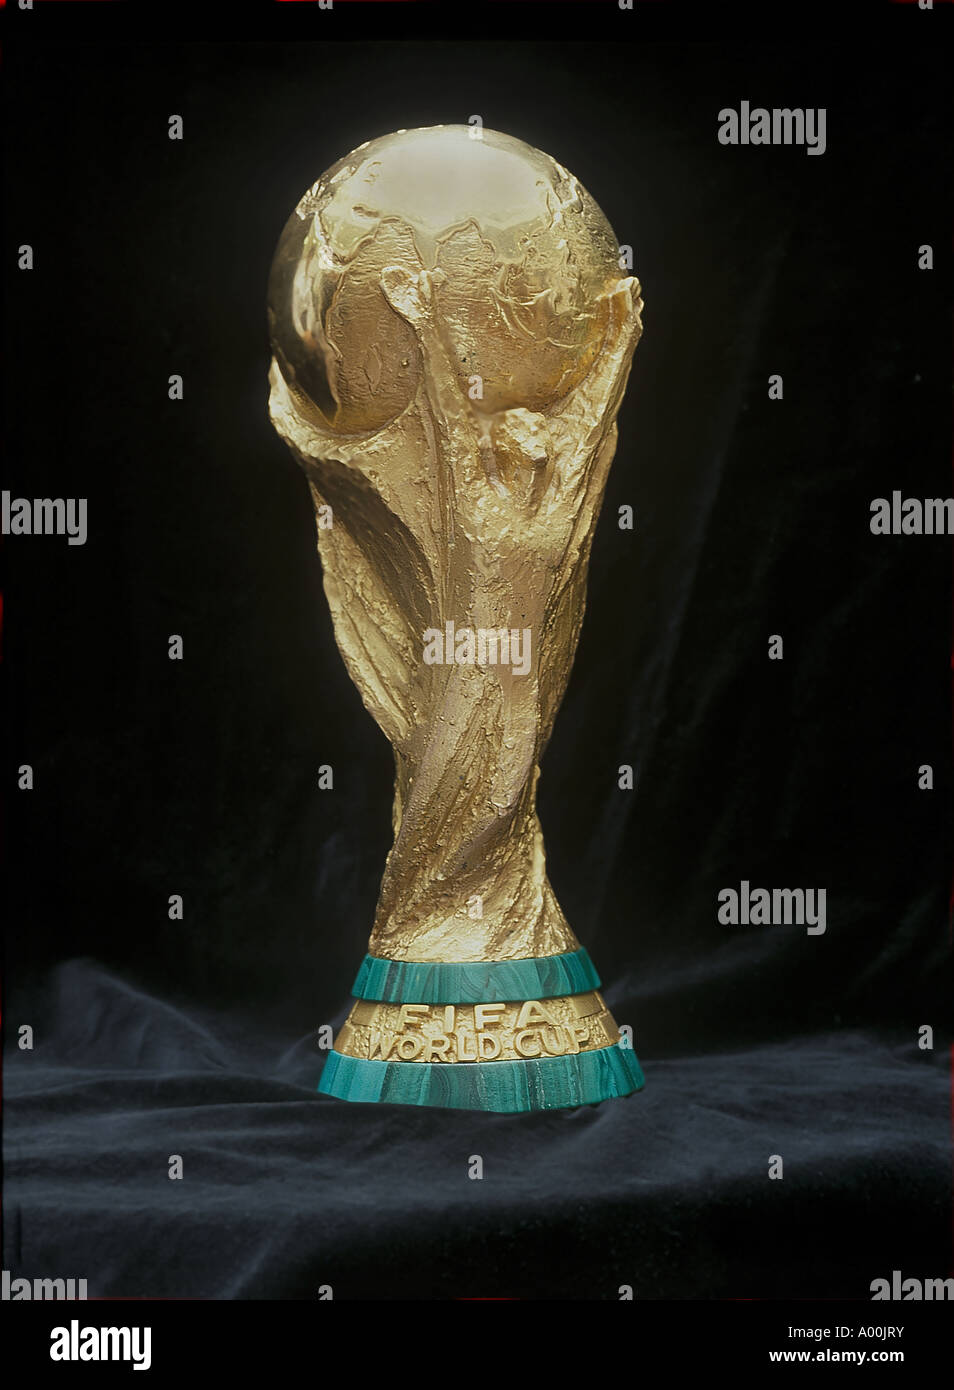 Coppa del mondo fifa hanno gareggiato per il calcio di nazioni di tutto il mondo sul display pubblico a Londra nel 1995 Foto Stock